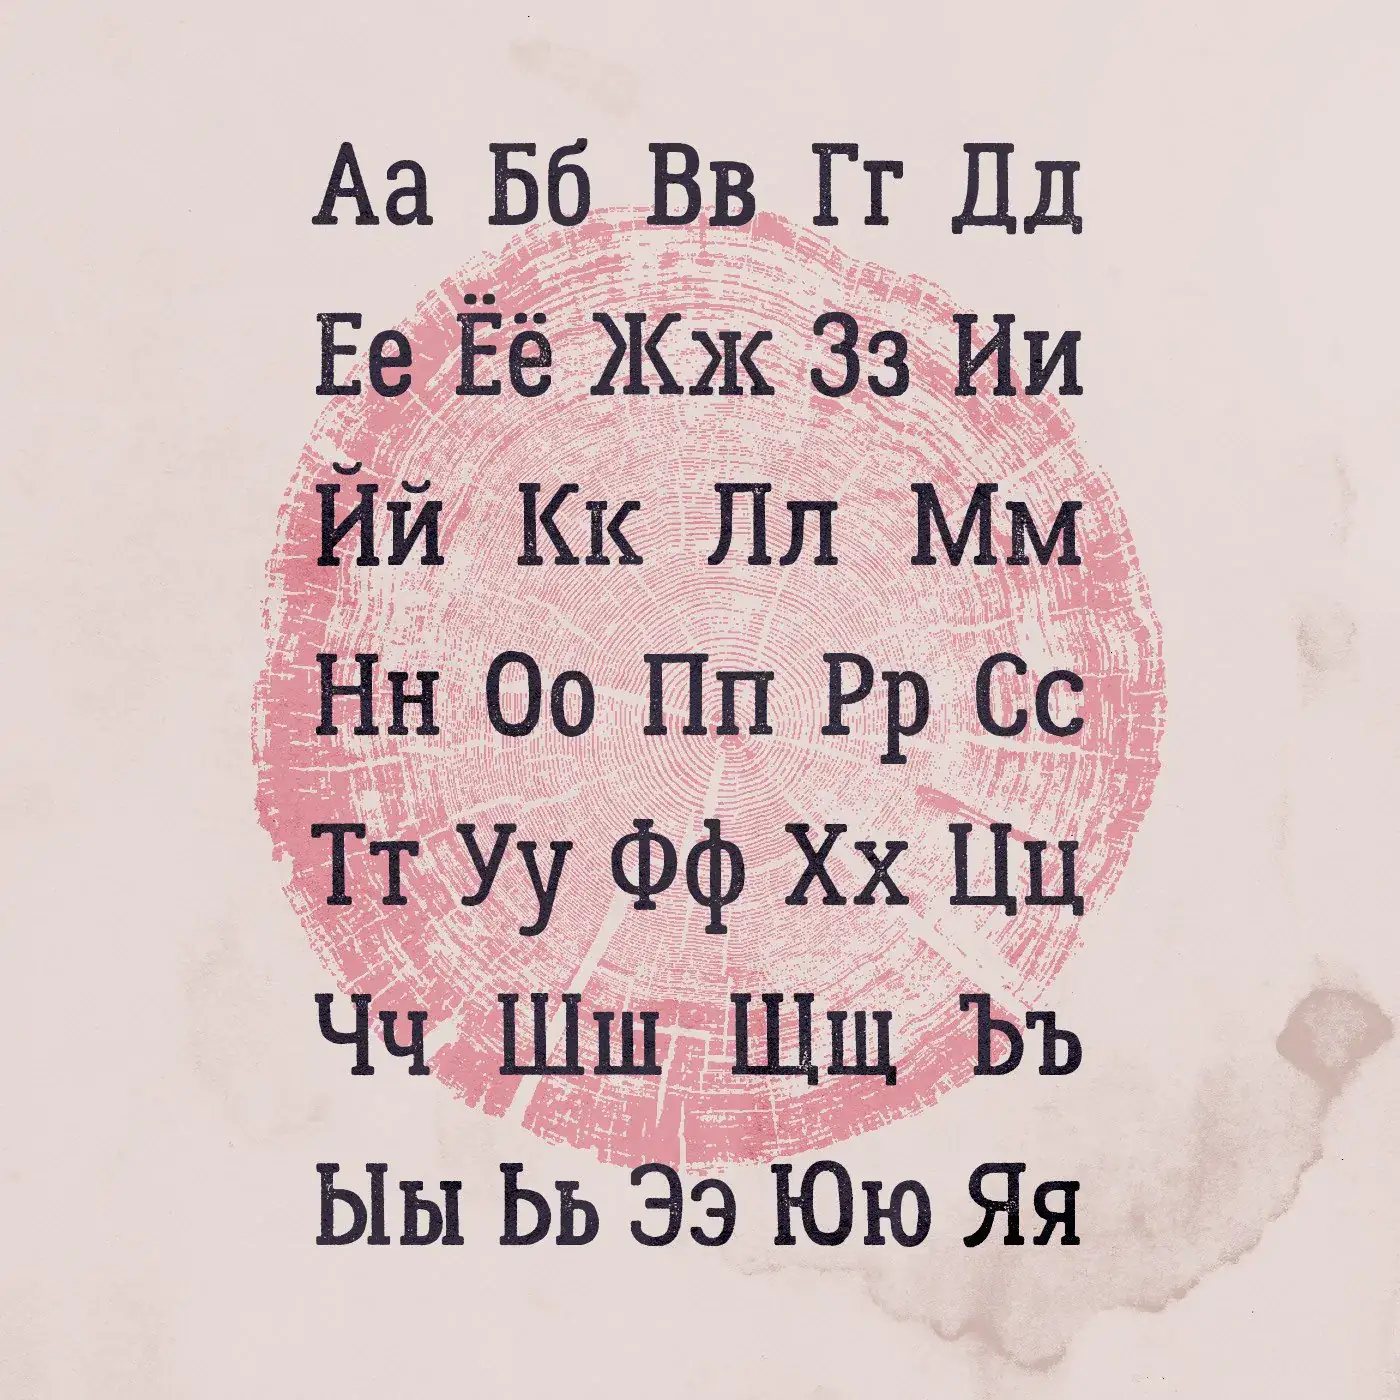 Шрифт Lumberjack Cyrillic